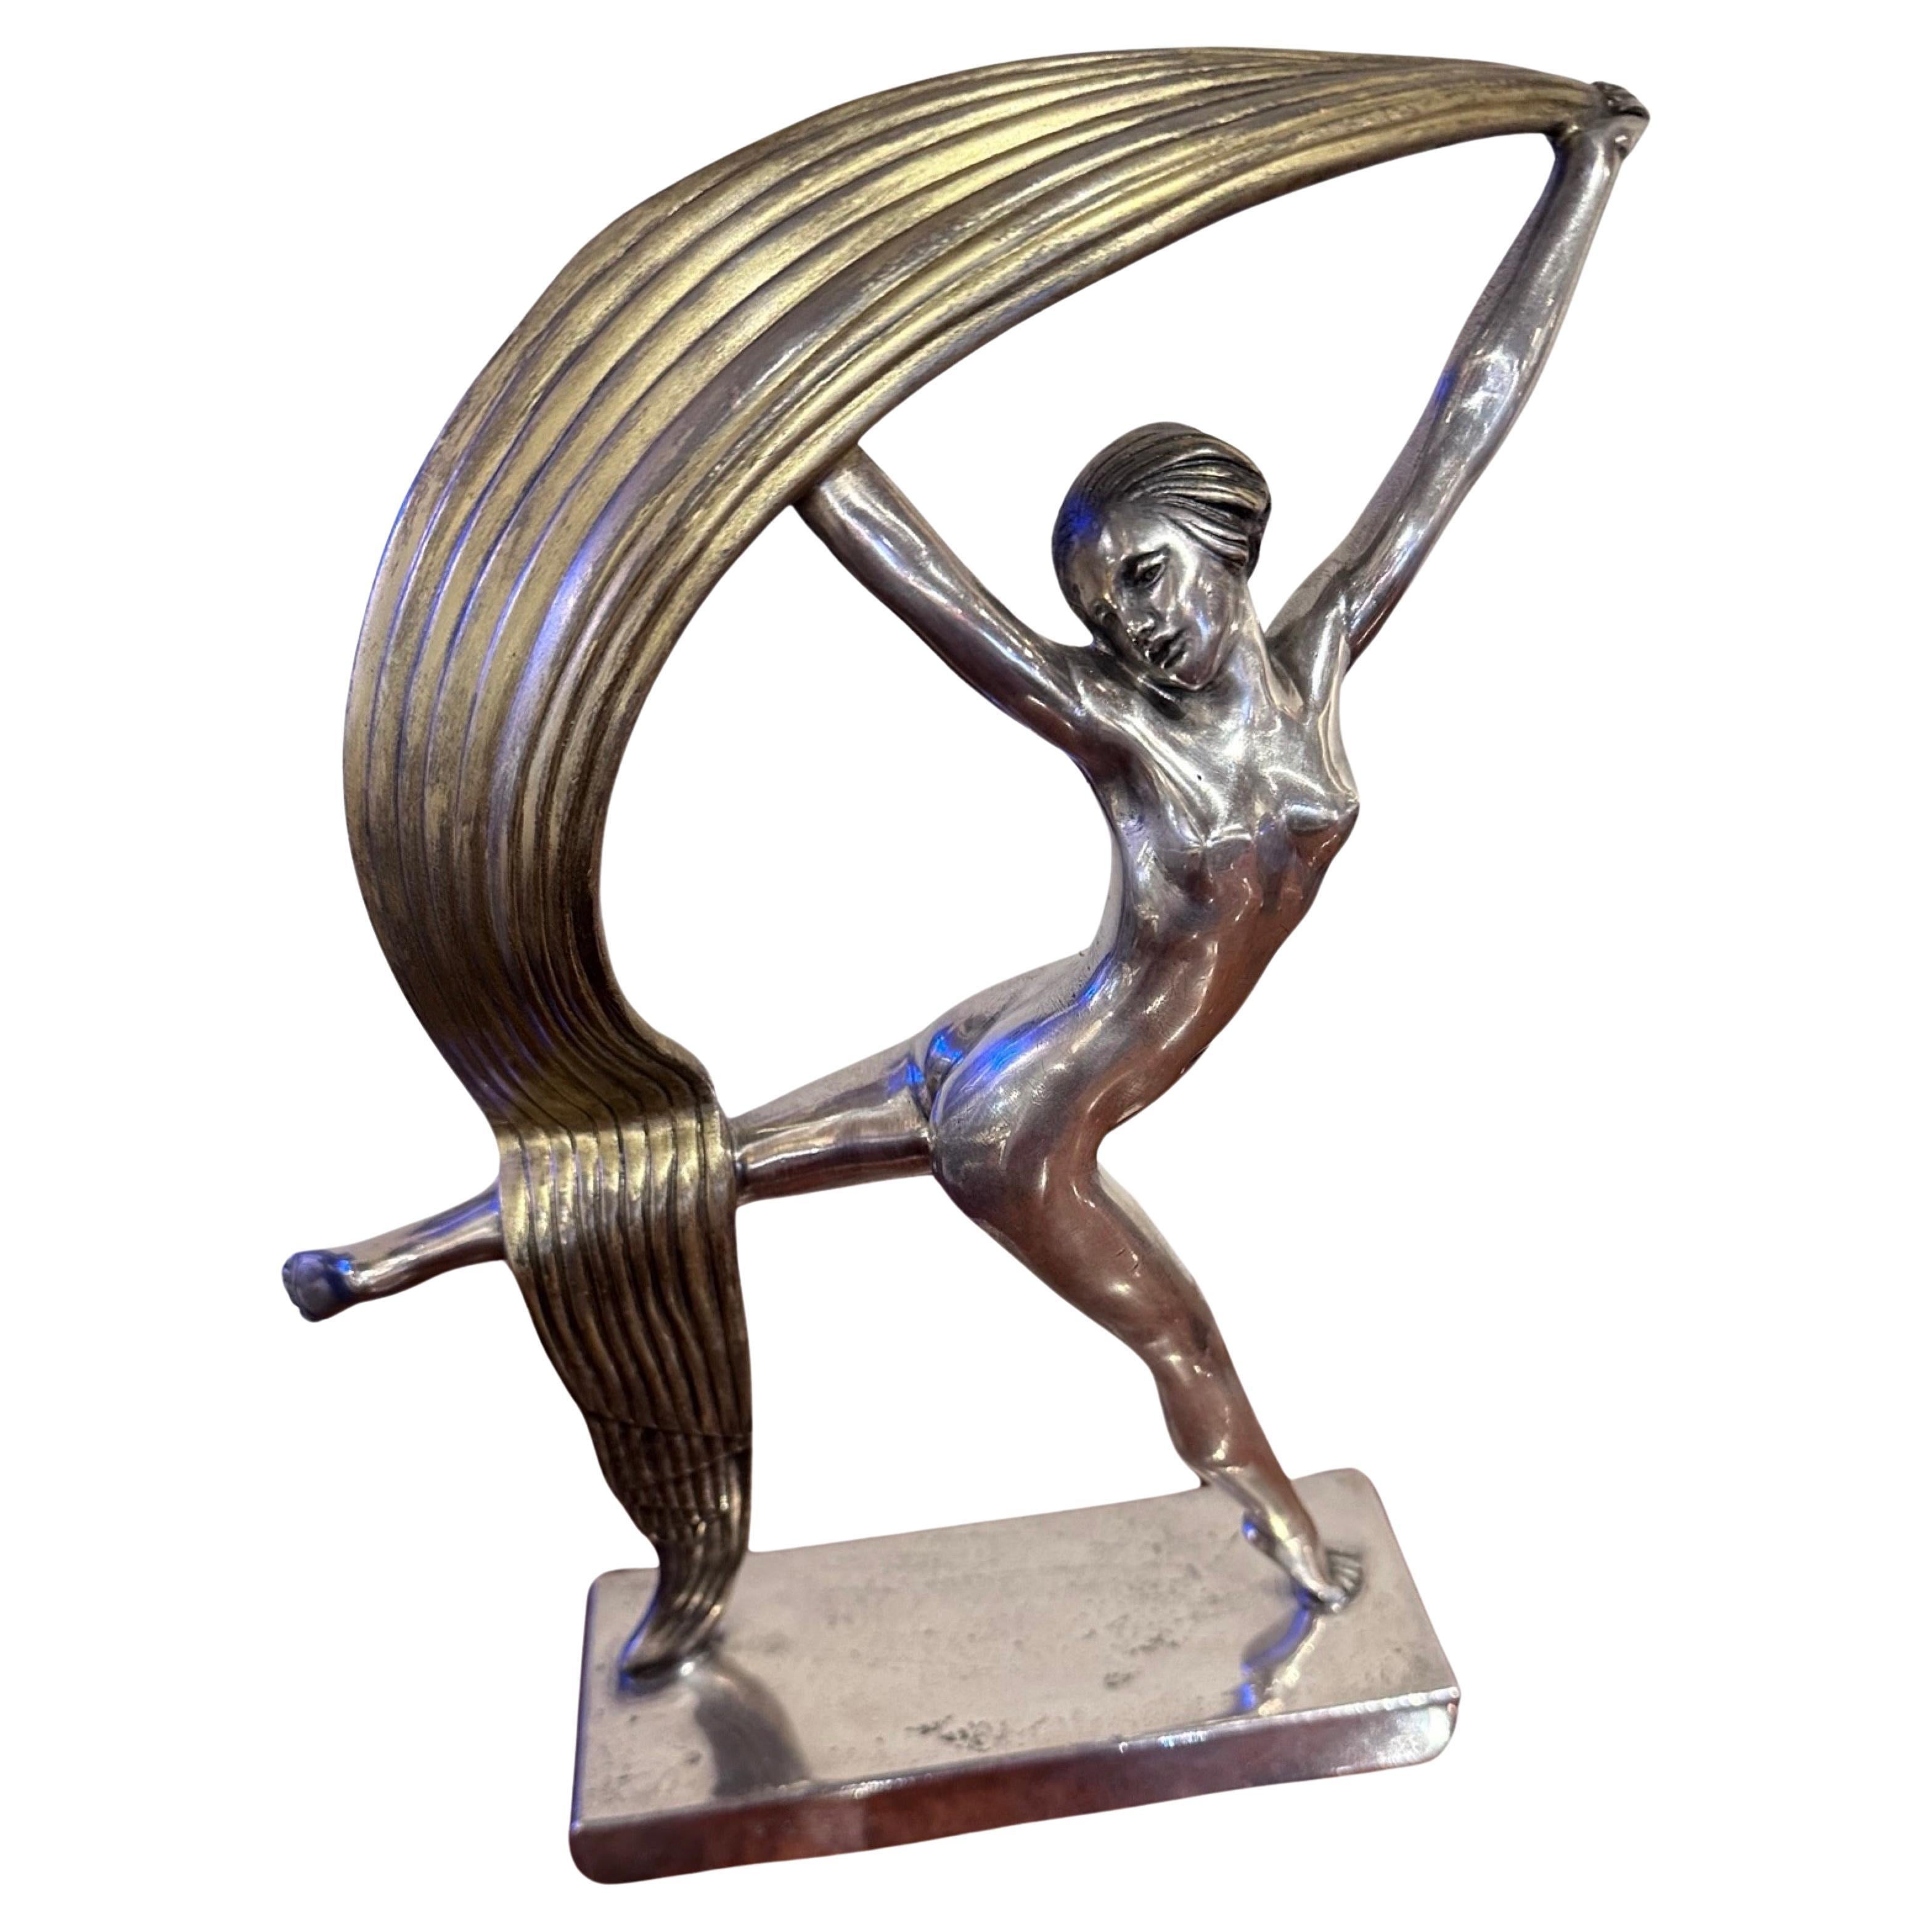 La danseuse au foulard en bronze Art déco d'Alexandre Kéléty, créée en France en 1925, représente une danseuse tenant un foulard stylisé plaqué argent et doré, monté sur une base en bronze argenté. Cette sculpture en bronze argenté et doré est une